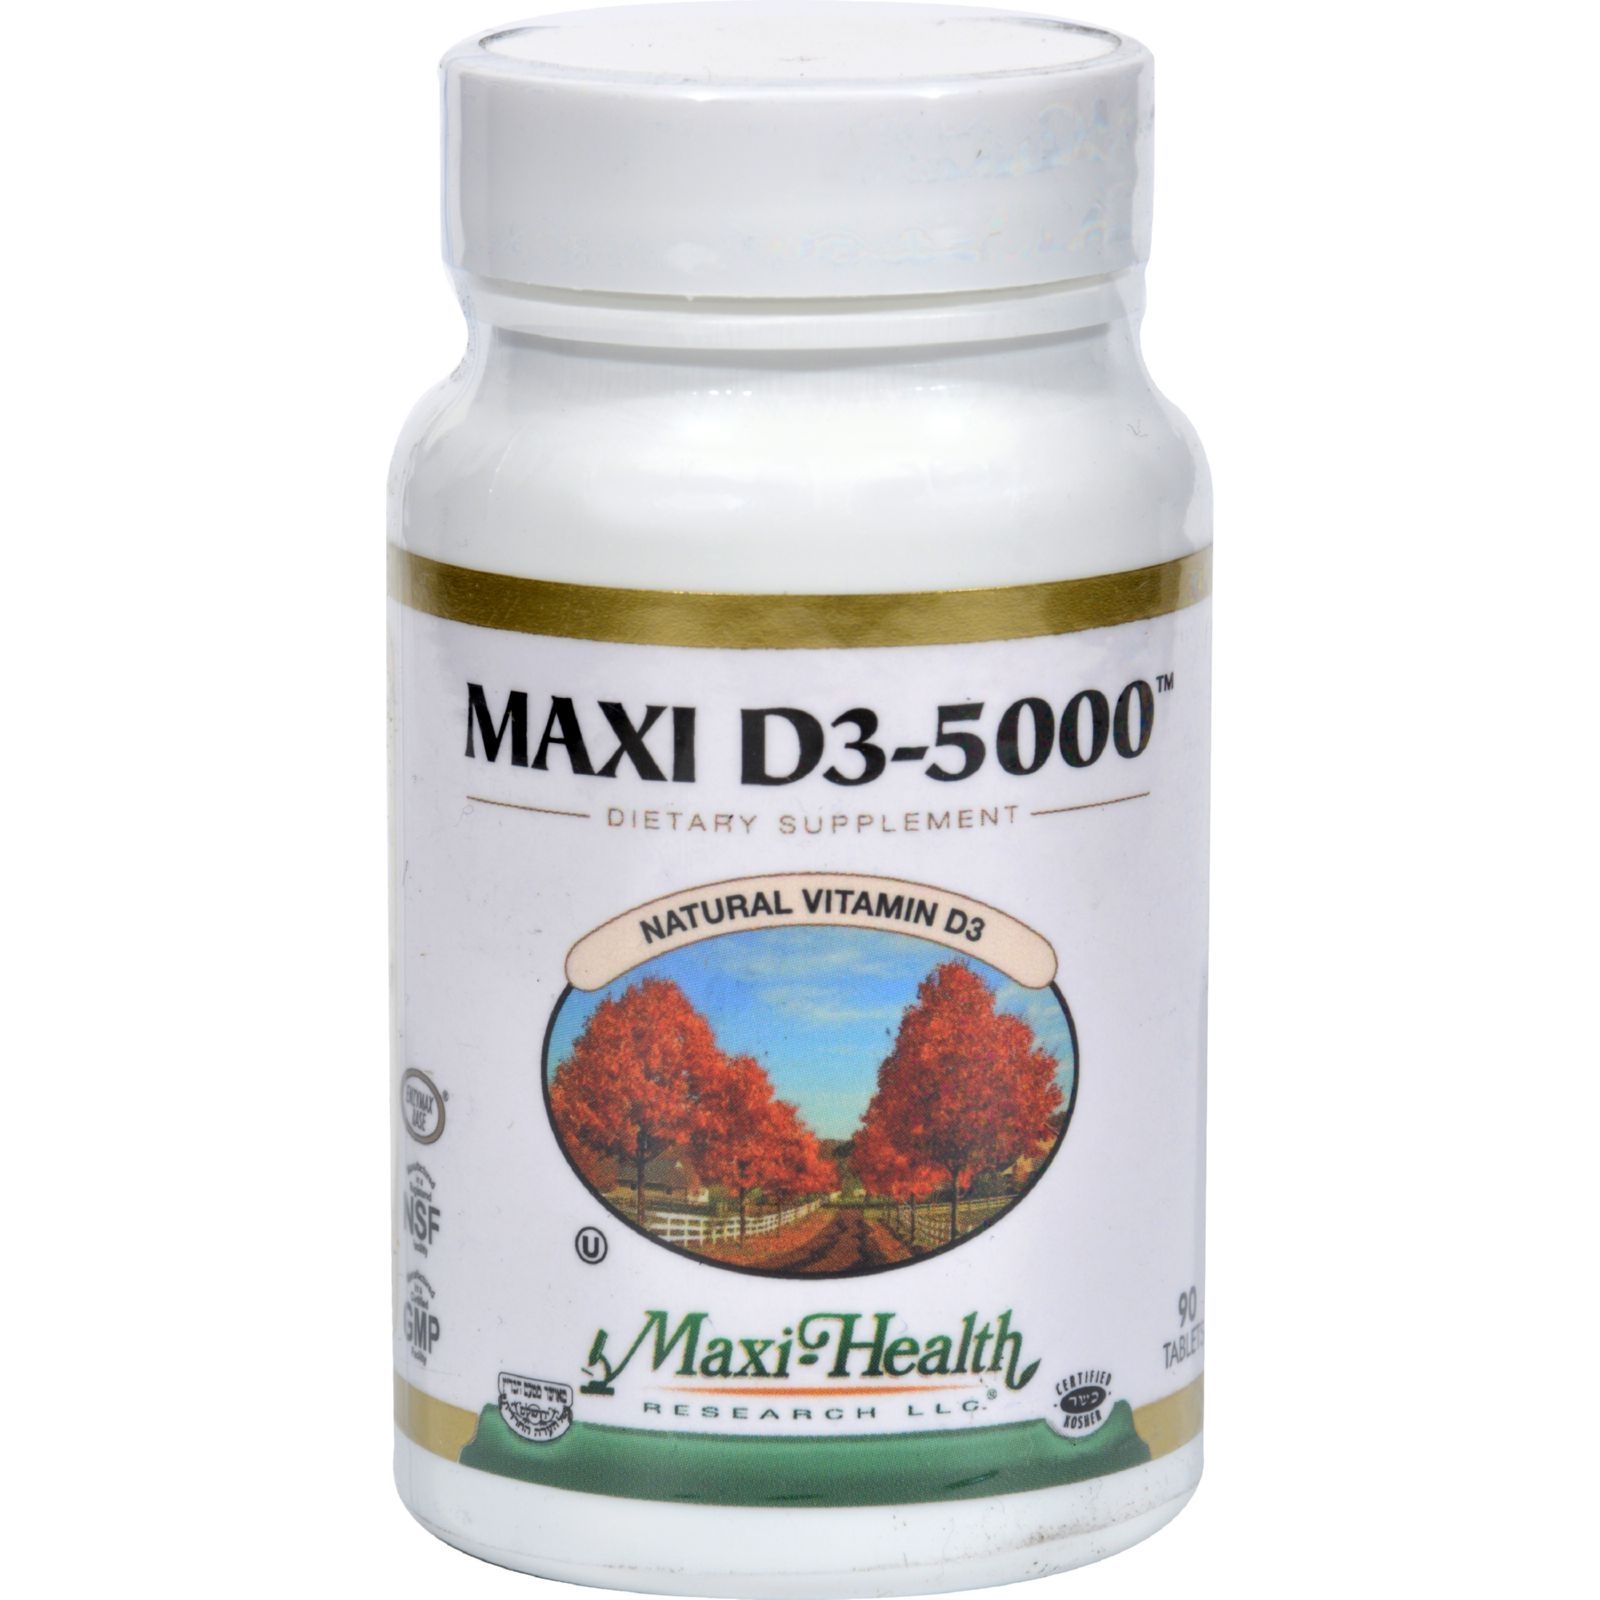 Maxi  Kosher s Maxi D3 5000 - 5000 Iu - 90 s